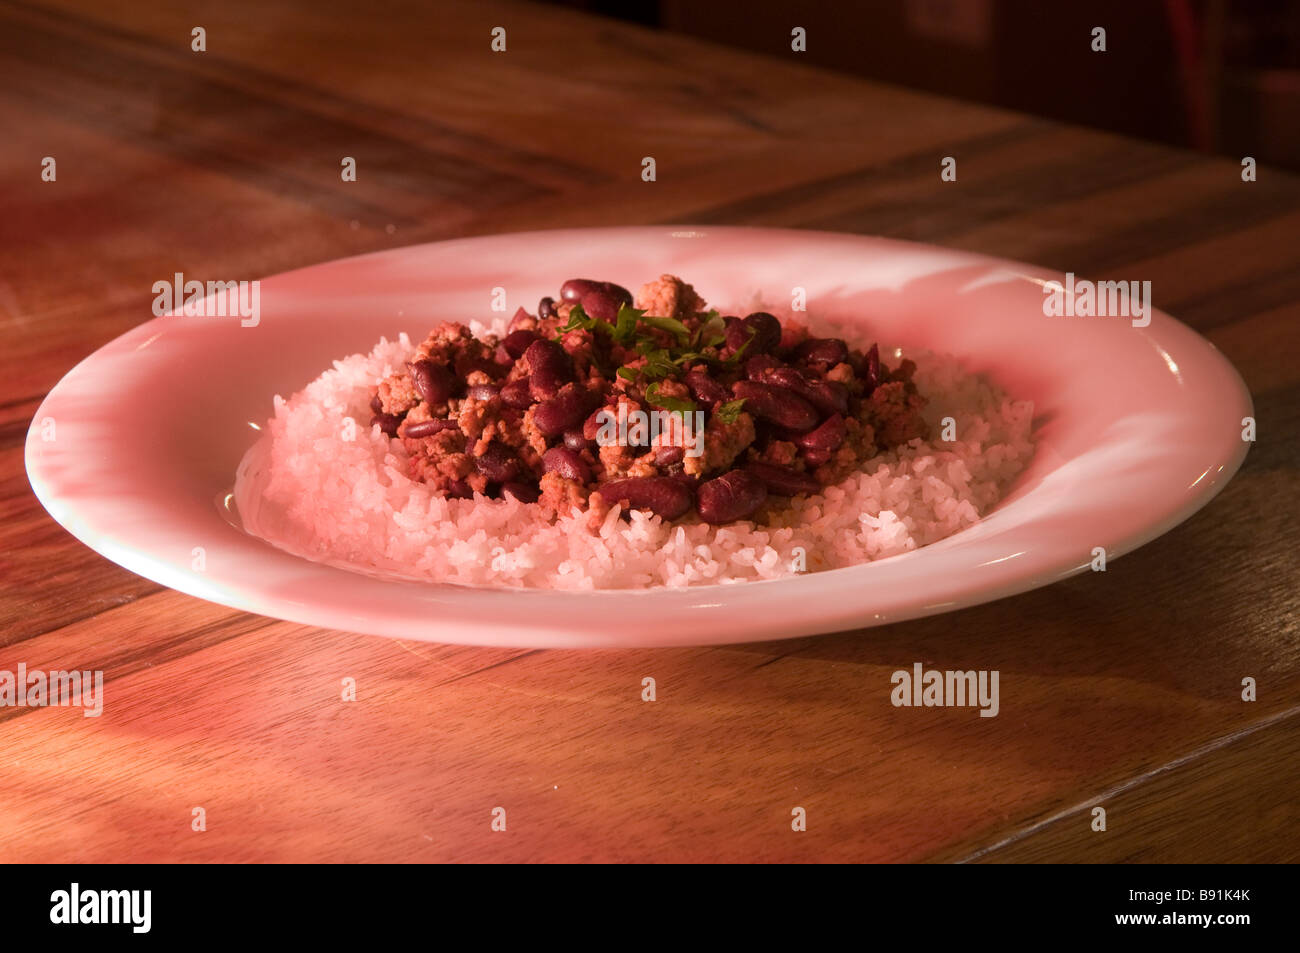 Assiette de chili con carne la viande hachée aux haricots et riz blanc servi dans un restaurant. Banque D'Images